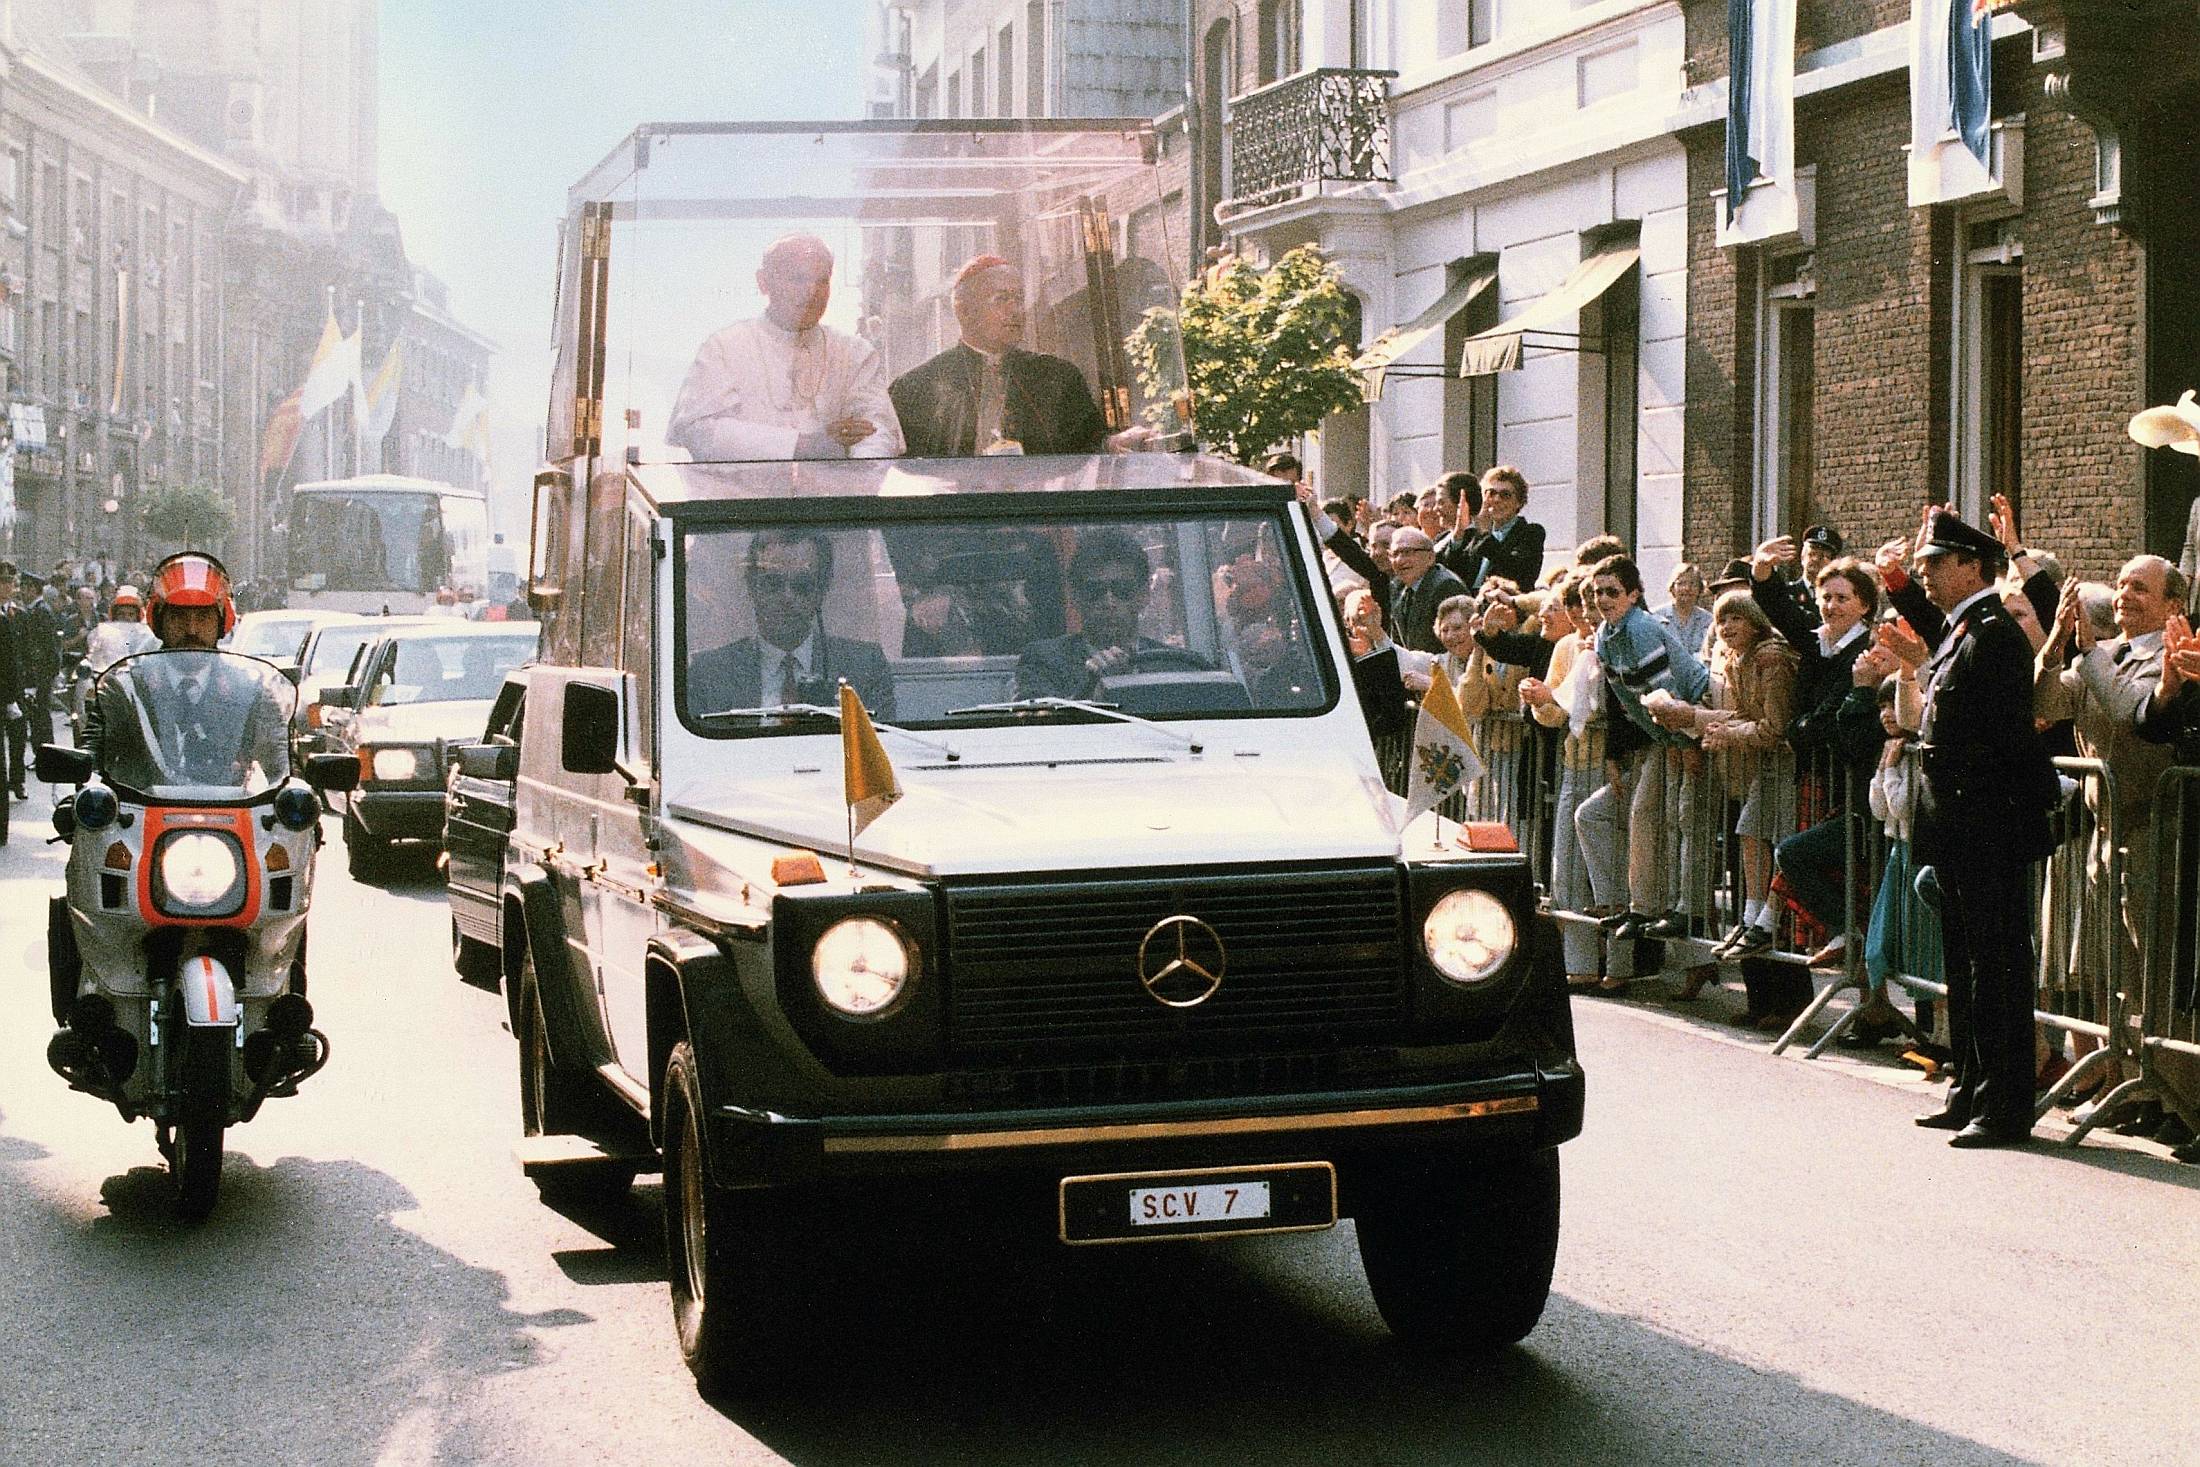 Premiere vor 40 Jahren: „Papamobil“ auf Basis der Mercedes-Benz G-Klasse

Premiere 40 years ago: “Popemobile” based on the Mercedes-Benz G-Class